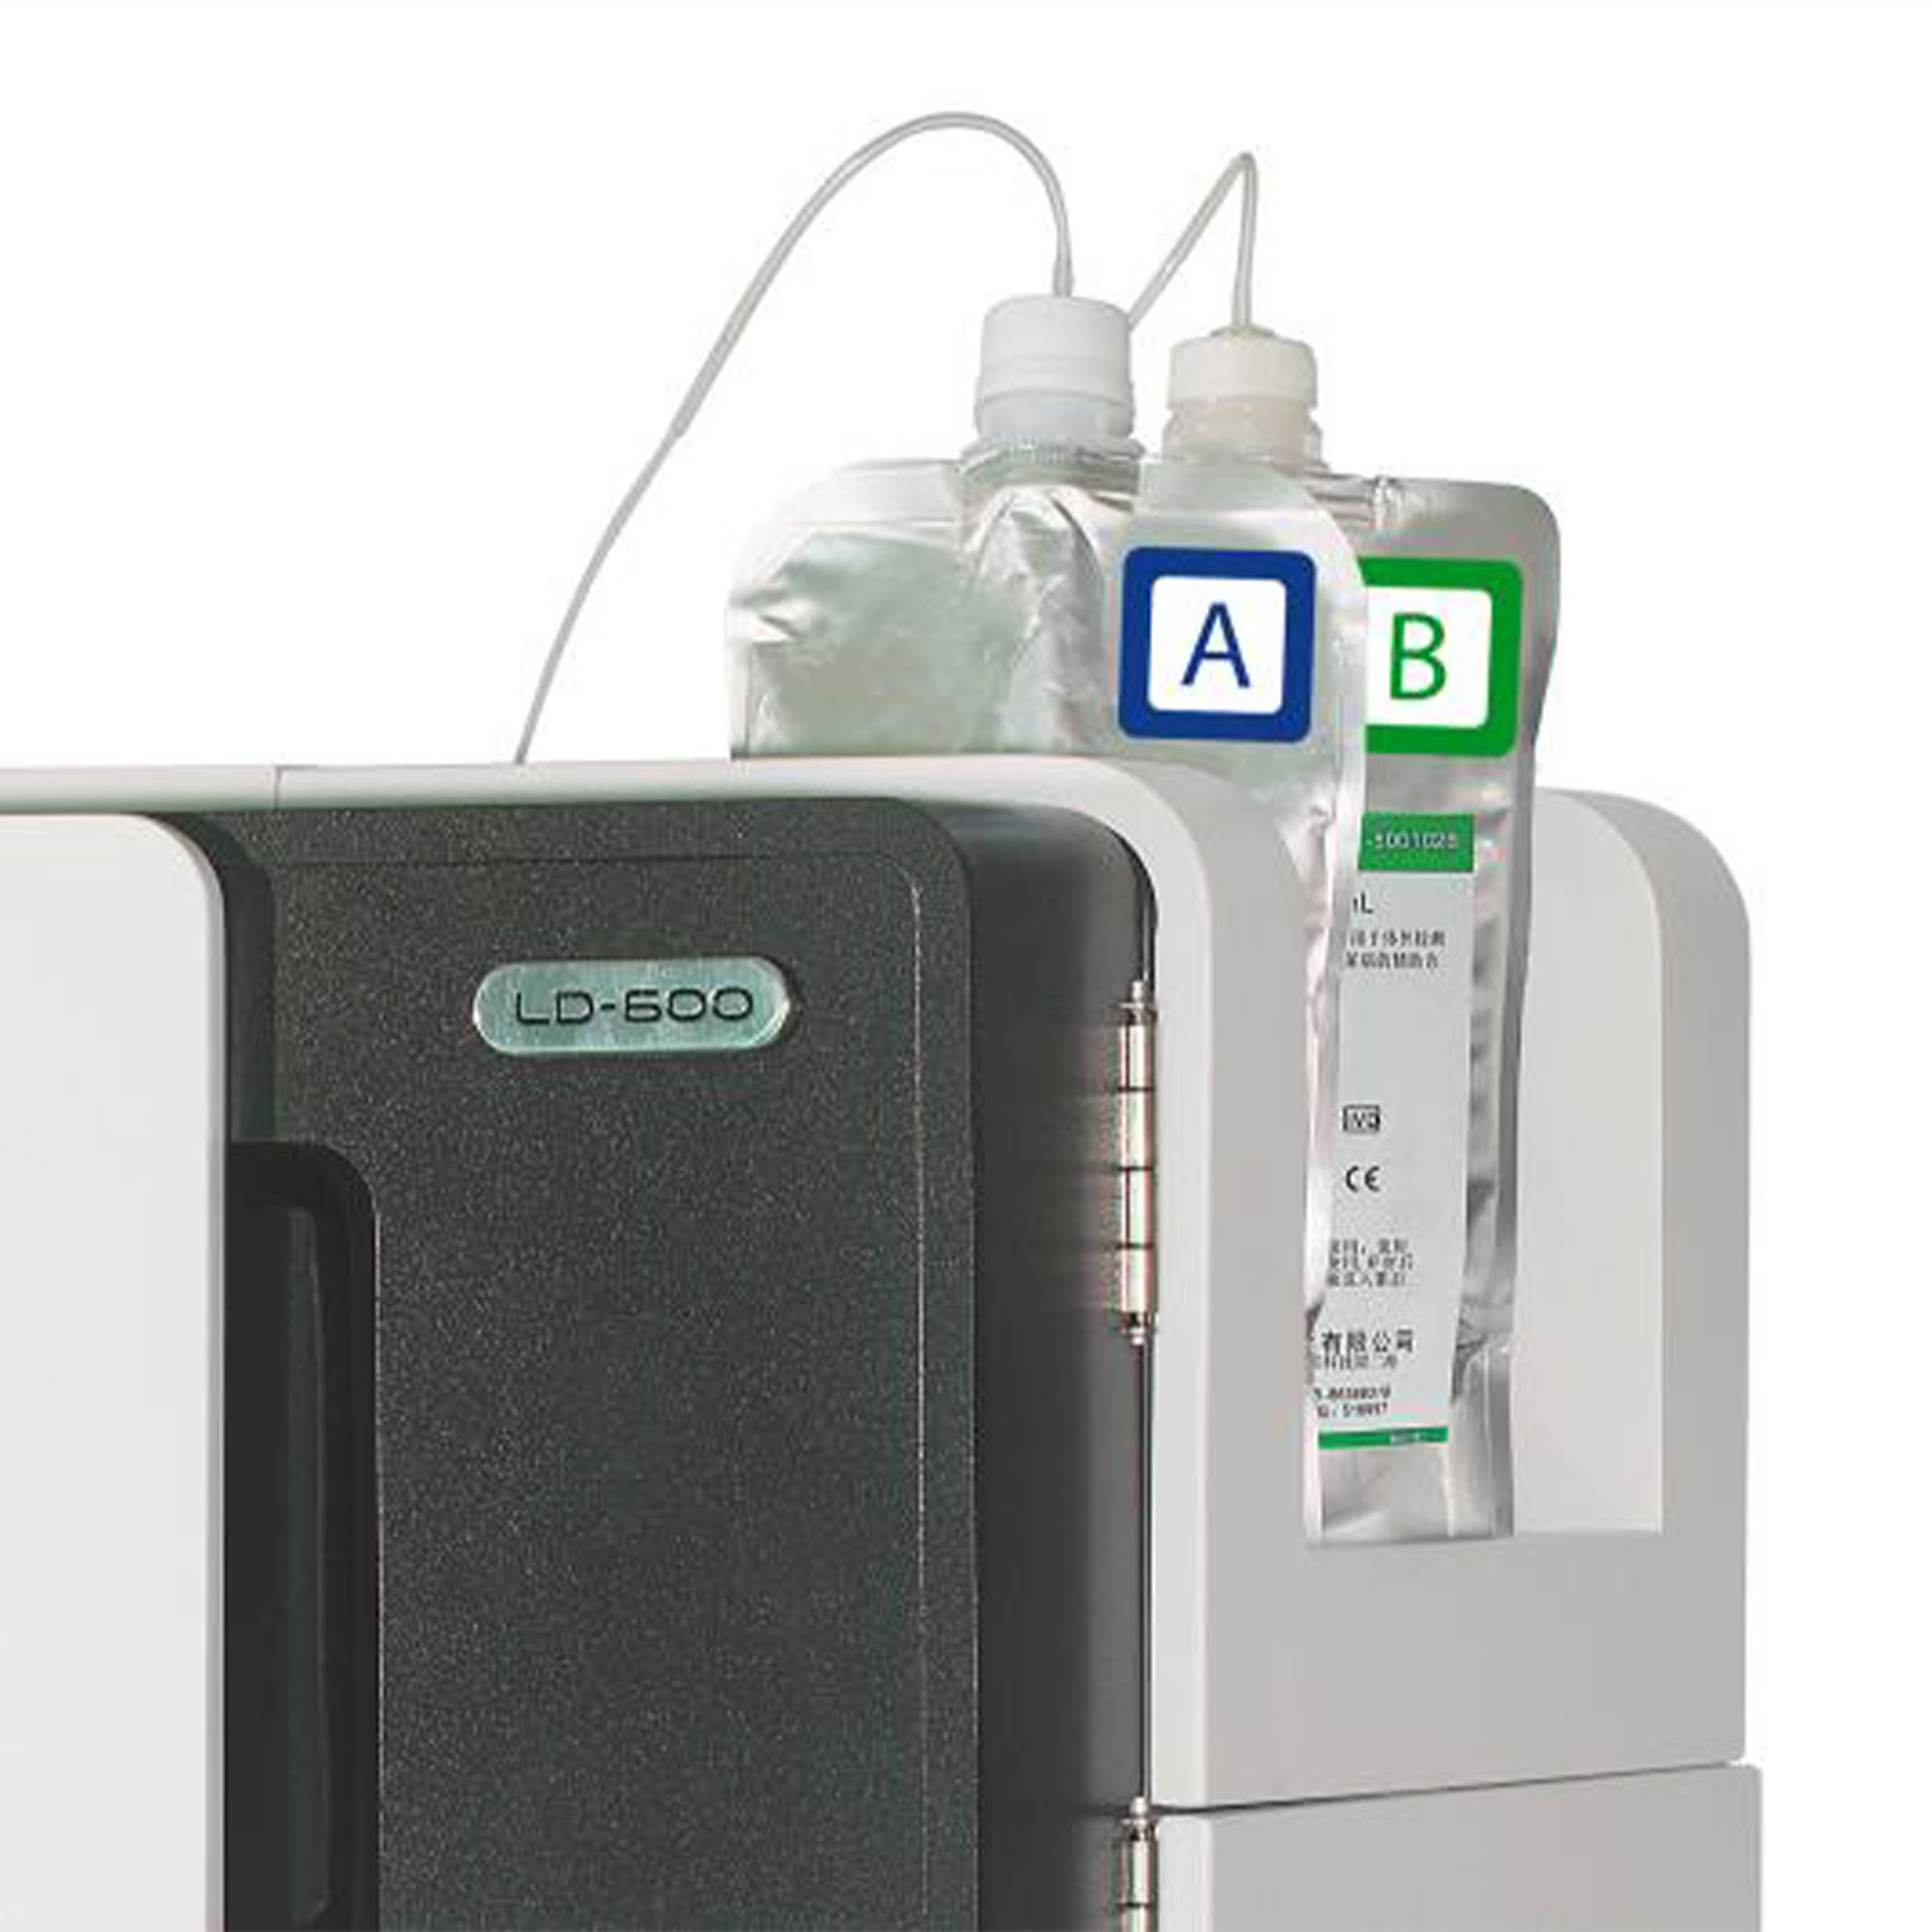 محلول 600 تستی دستگاه A1c LD-600 - GLY COSYLATED HEMOGLOBIN TEST REAGENT  KIT  - lABNOVATION - مصرفی - هماتولوژی و بانک خون - گروه آزمایشگاهی پادینا ویستا